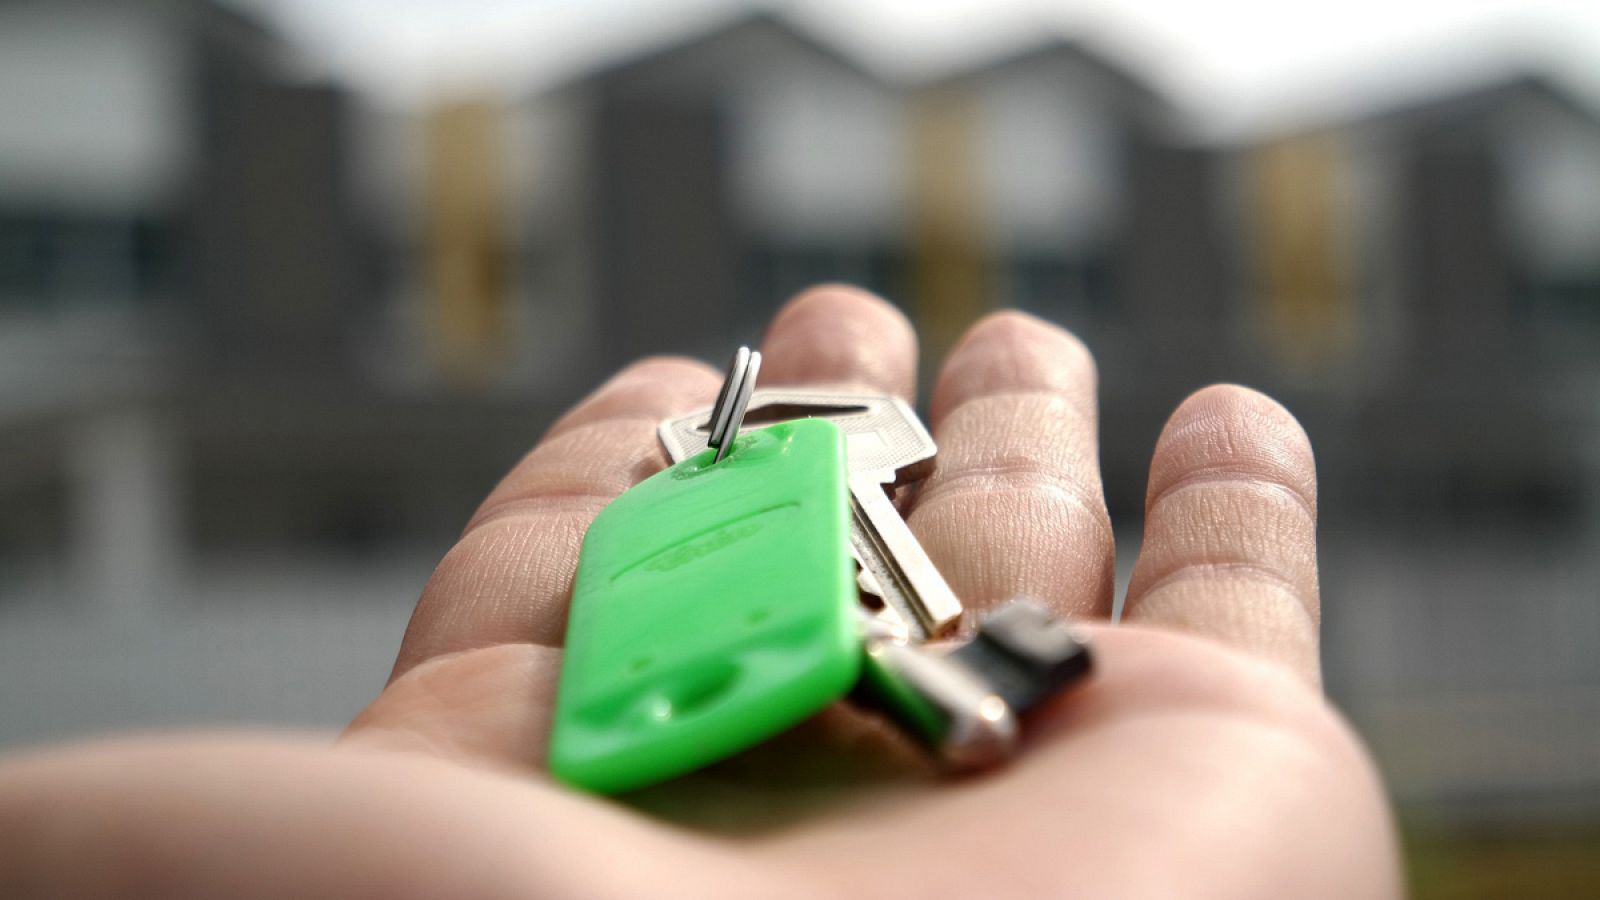 Foto de archivo de una persona sujetando las llaves de una vivienda